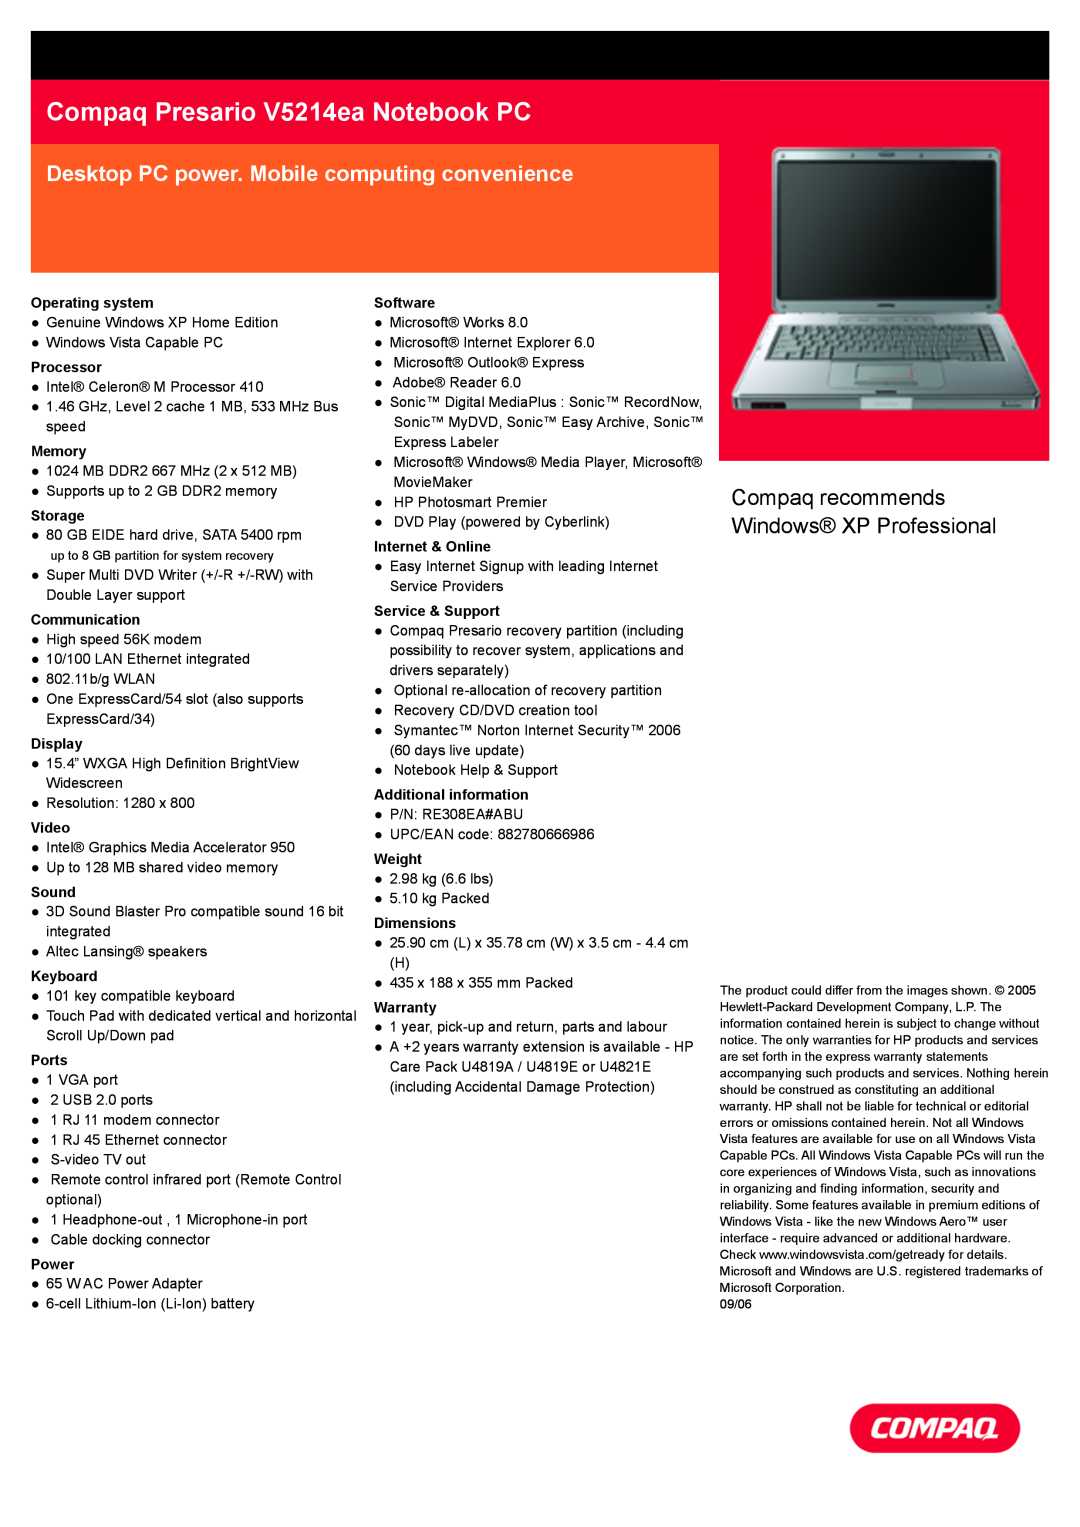 Compaq warranty Compaq Presario V5214ea Notebook PC, Desktop PC power. Mobile computing convenience 